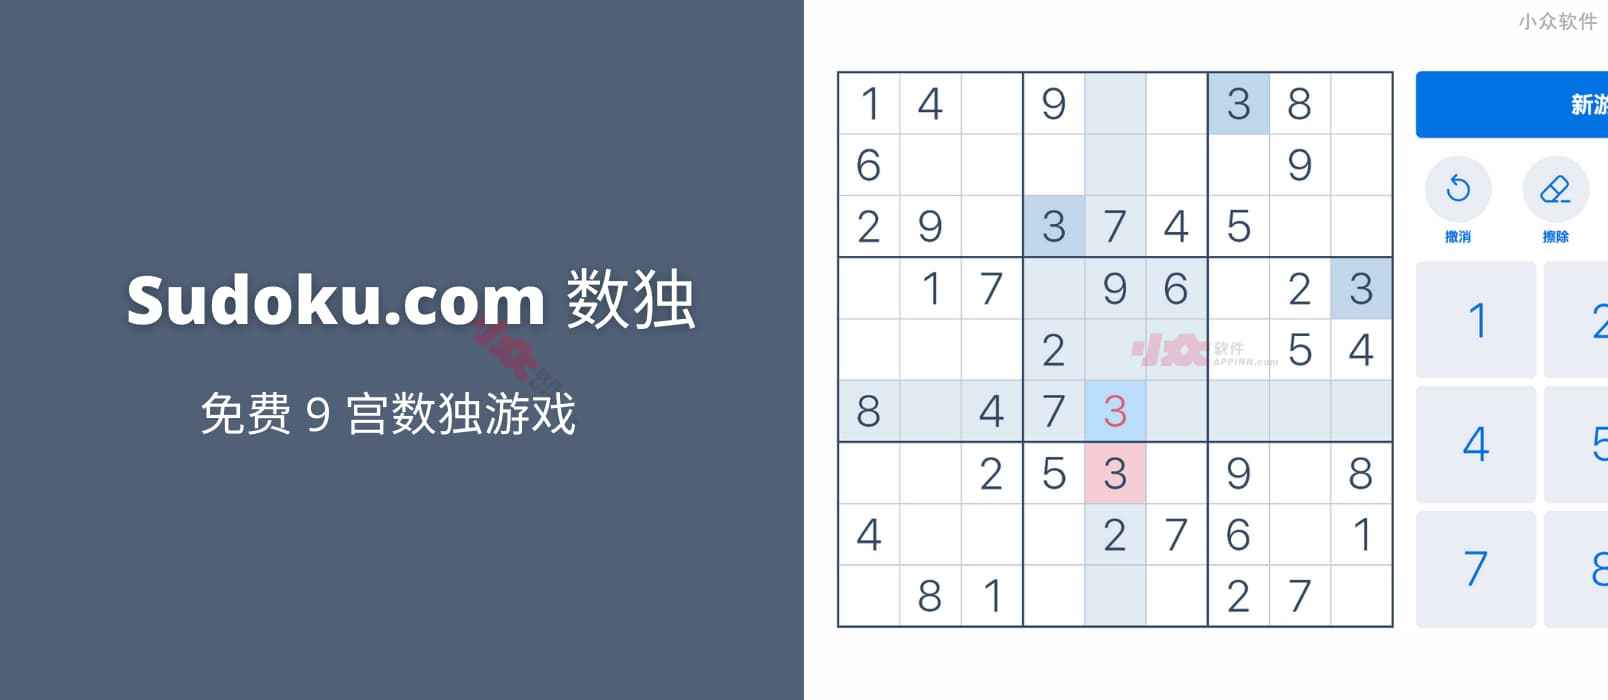 数独 - 来自 Sudoku.com 的免费 9 宫数独游戏[Web/iOS/Android]